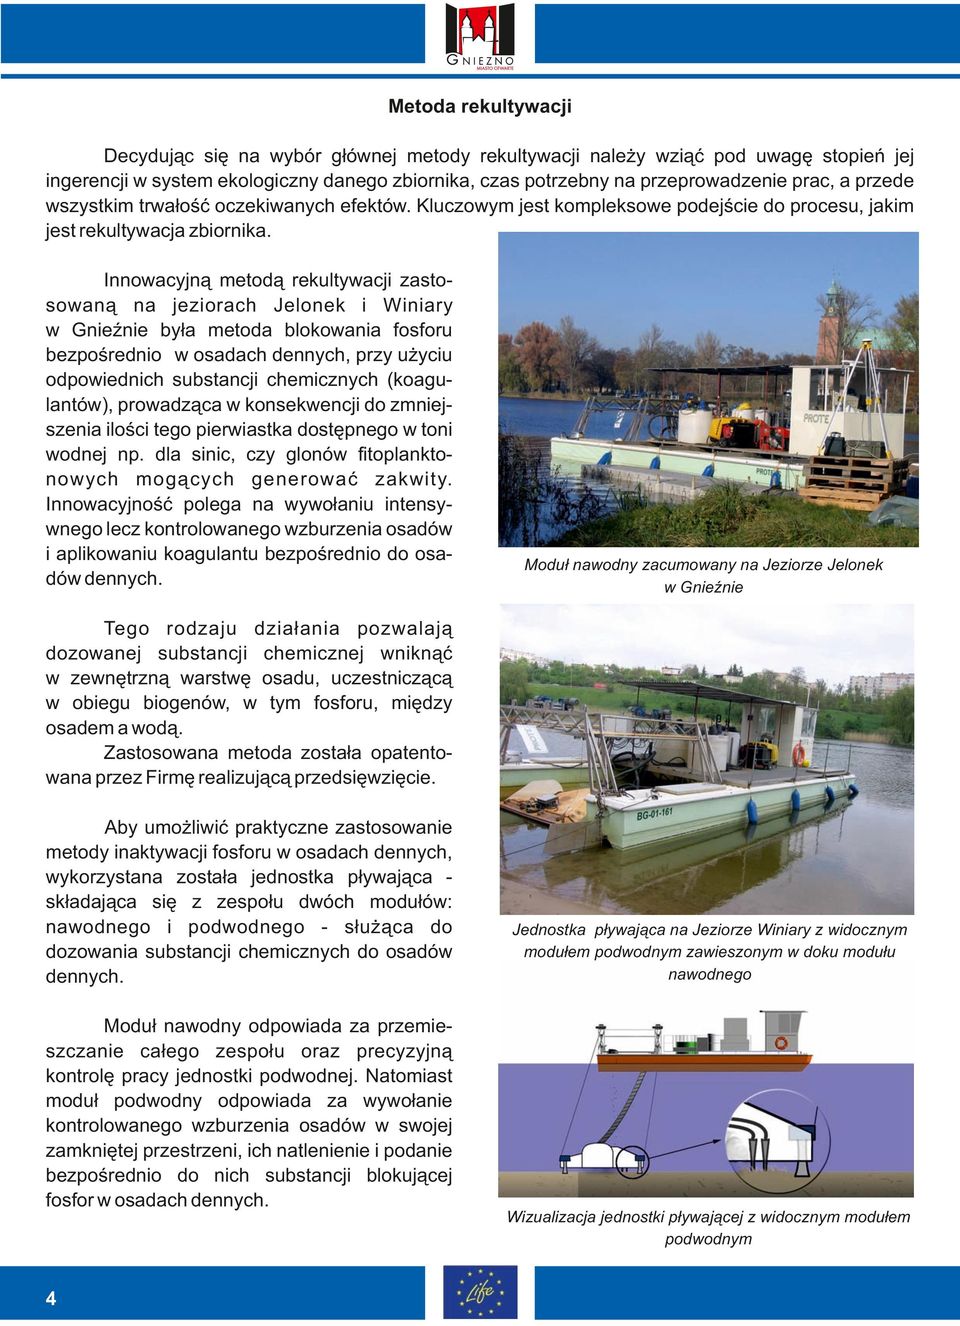 Innowacyjną metodą rekultywacji zastosowaną na jeziorach Jelonek i Winiary w Gnieźnie była metoda blokowania fosforu bezpośrednio w osadach dennych, przy użyciu odpowiednich substancji chemicznych